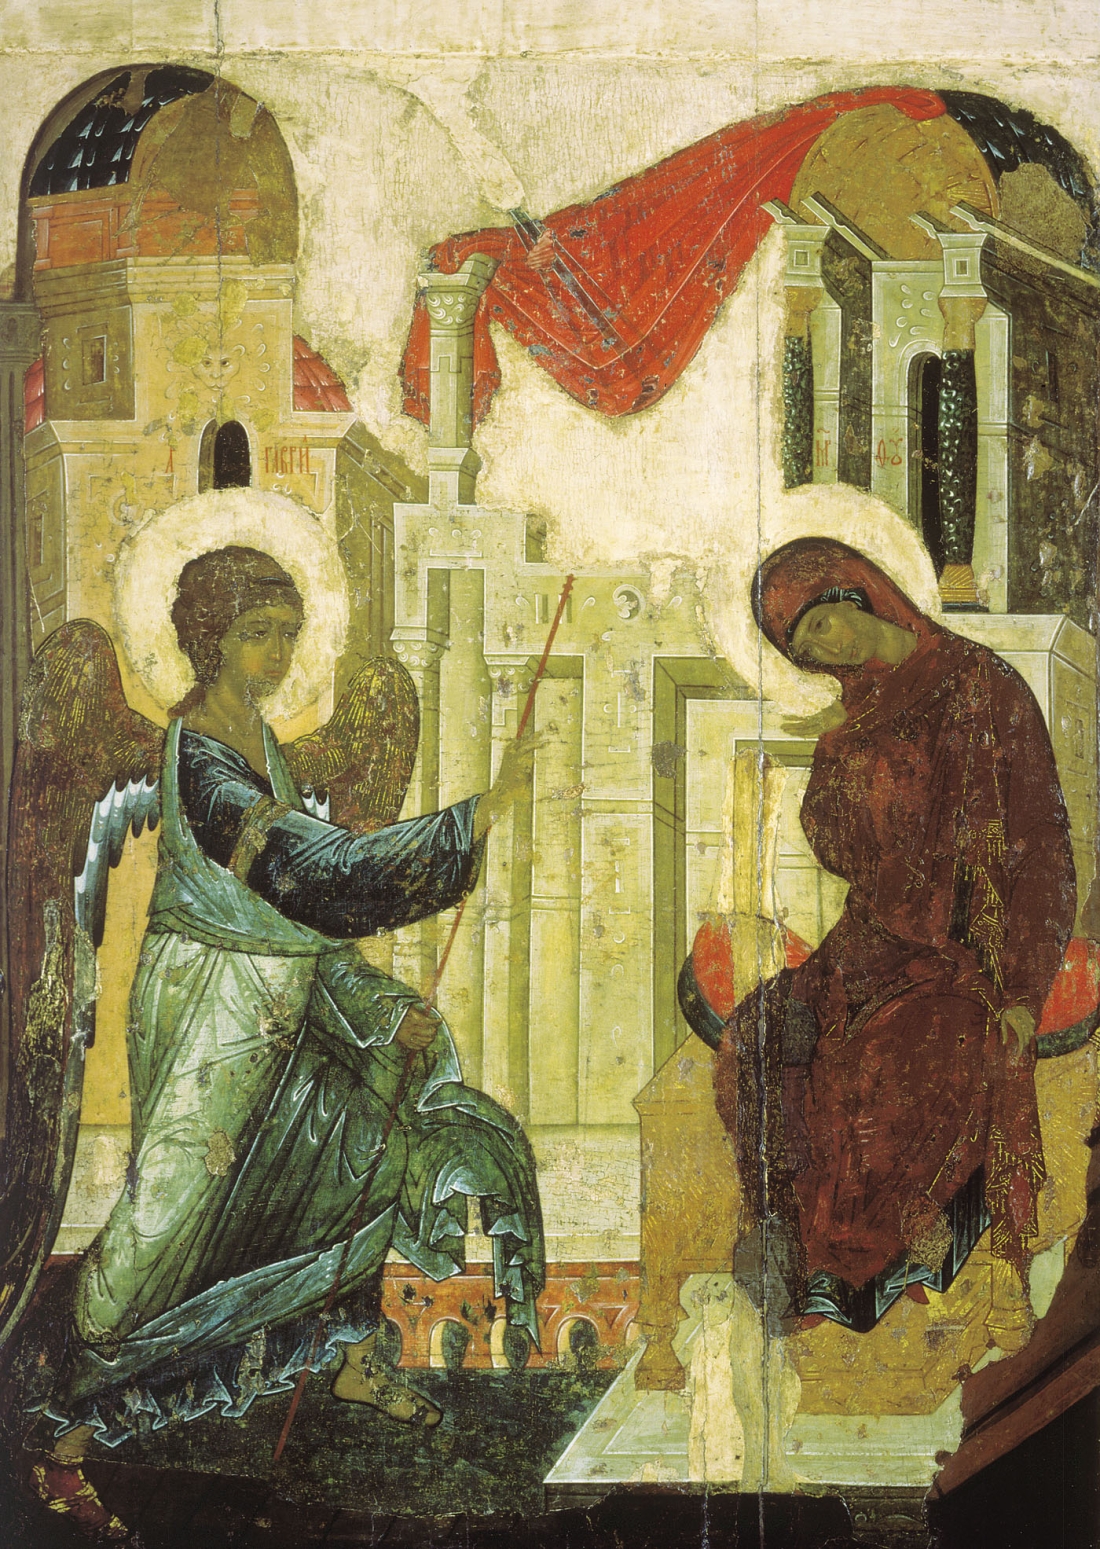 Αντρέι Ρουμπλιώφ, Ευαγγελισμός της Θεοτόκου, 1408, 125 × 94 εκ.  Στην αναπαράσταση του σπουδαίου ρώσου ζωγράφου, ο αρχάγγελος δεν κρατά κρίνο, όπως έχει κυριαρχήσει στις αναπαραστάσεις της ανατολικής εικονογραφίας, αλλά ραβδί, που είναι σύμβολο αγγελιοφόρου.   